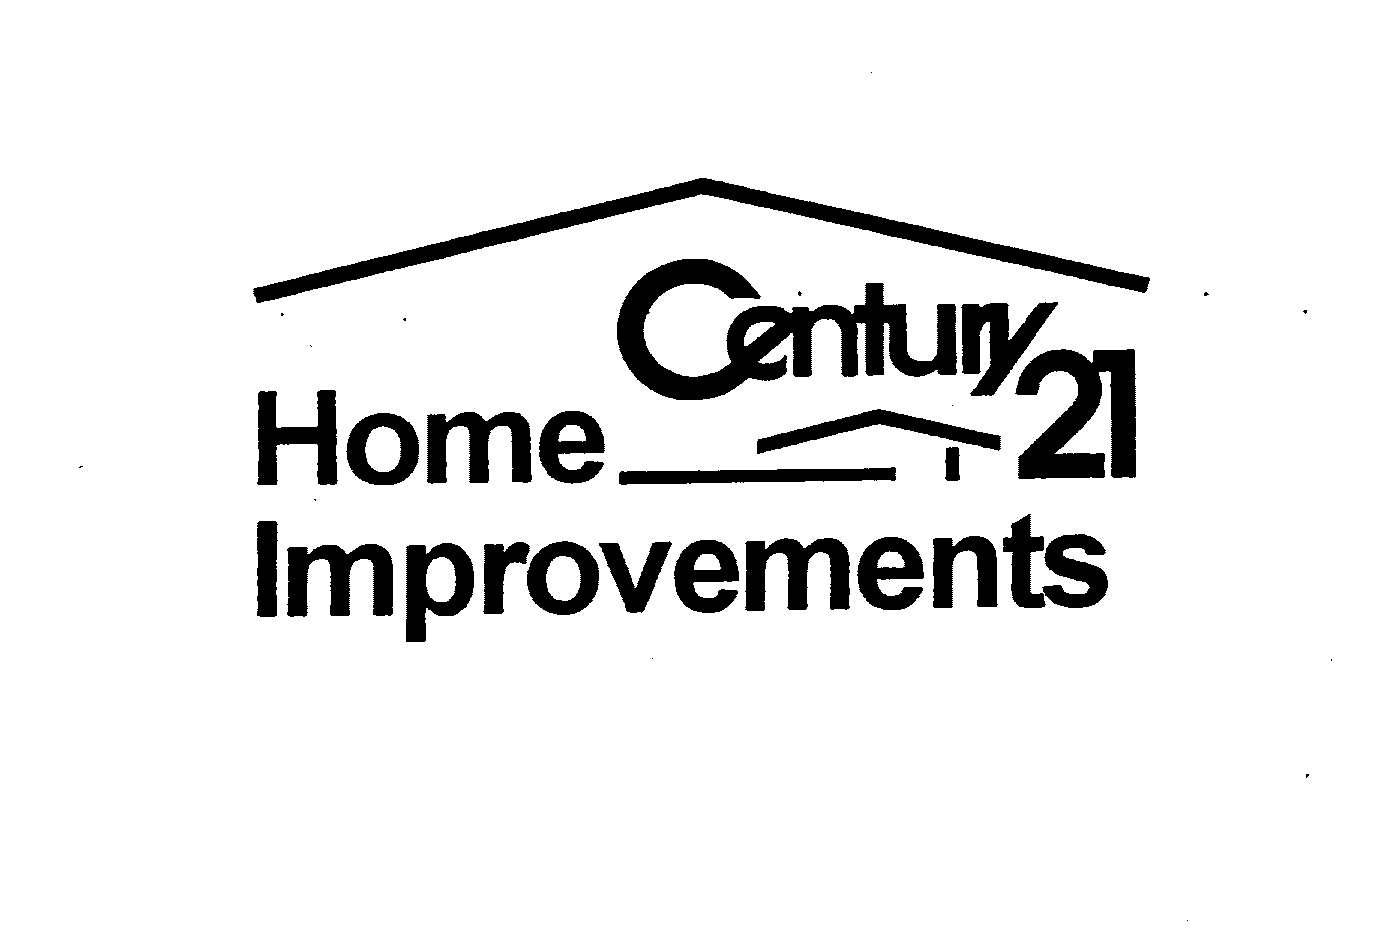  CENTURY HOME 21 IMPROVEMENTS